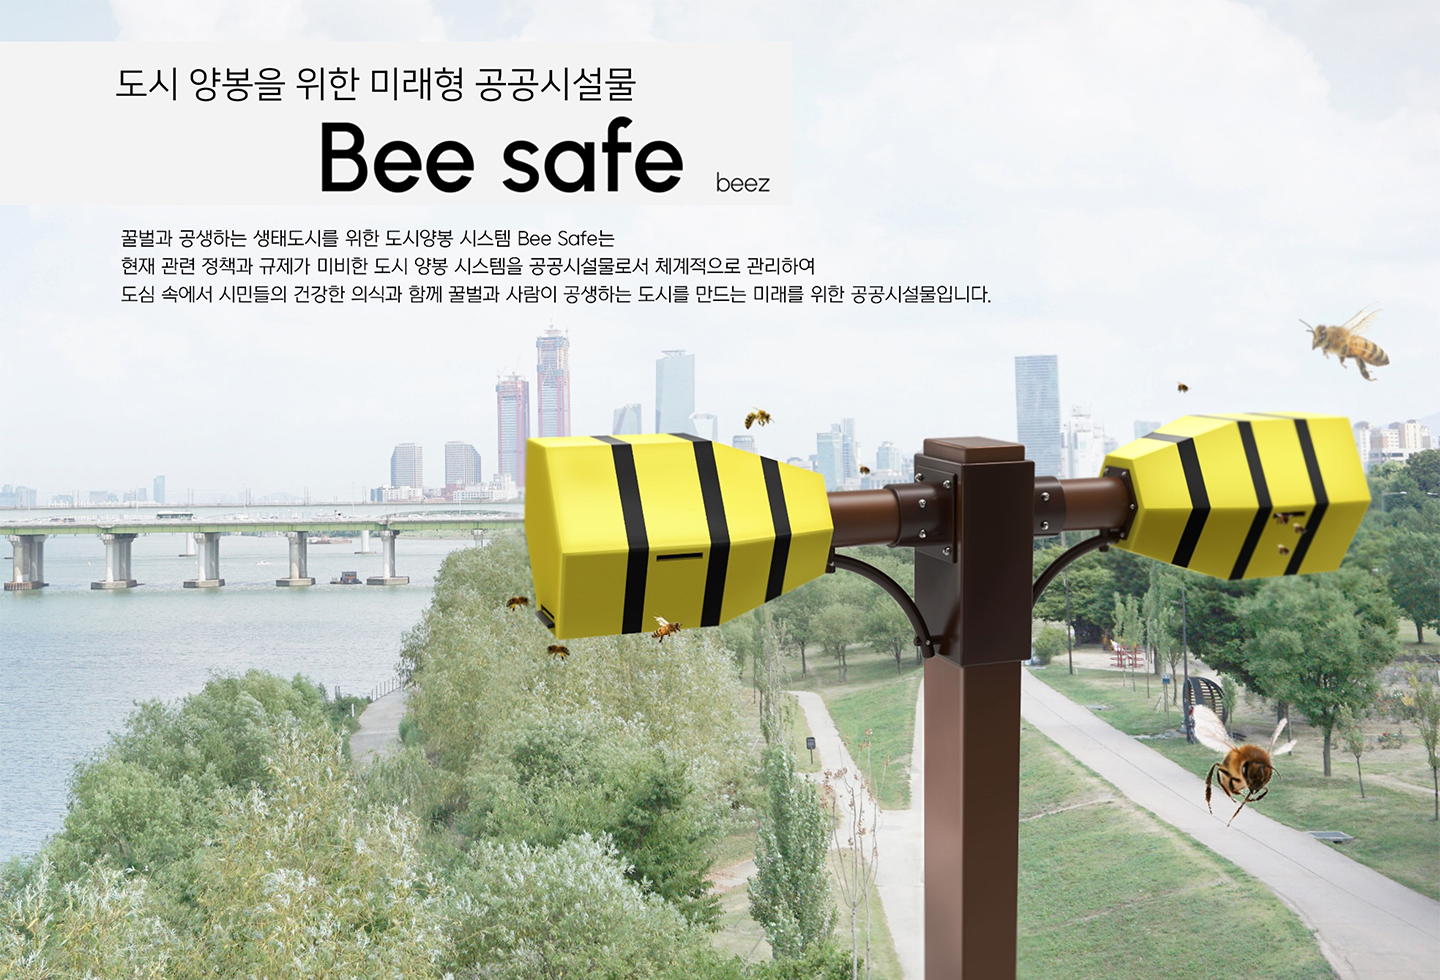 도시 양봉을 위한 미래형 공공시설물, Bee safe(beez), 꿀벌과 공생하는 생태도시를 위한 도시양봉 시스템 Bee Safe는 현재 관련 정책과 규제가 미비한 도시 양봉 시스템을 공공시설물로서 체계적으로 관리하여 도심 속에서 시민들의 건강한 의식과 함께 꿀벌과 사람이 공생하는 도시를 만드는 미래를 위한 공공시설물입니다.